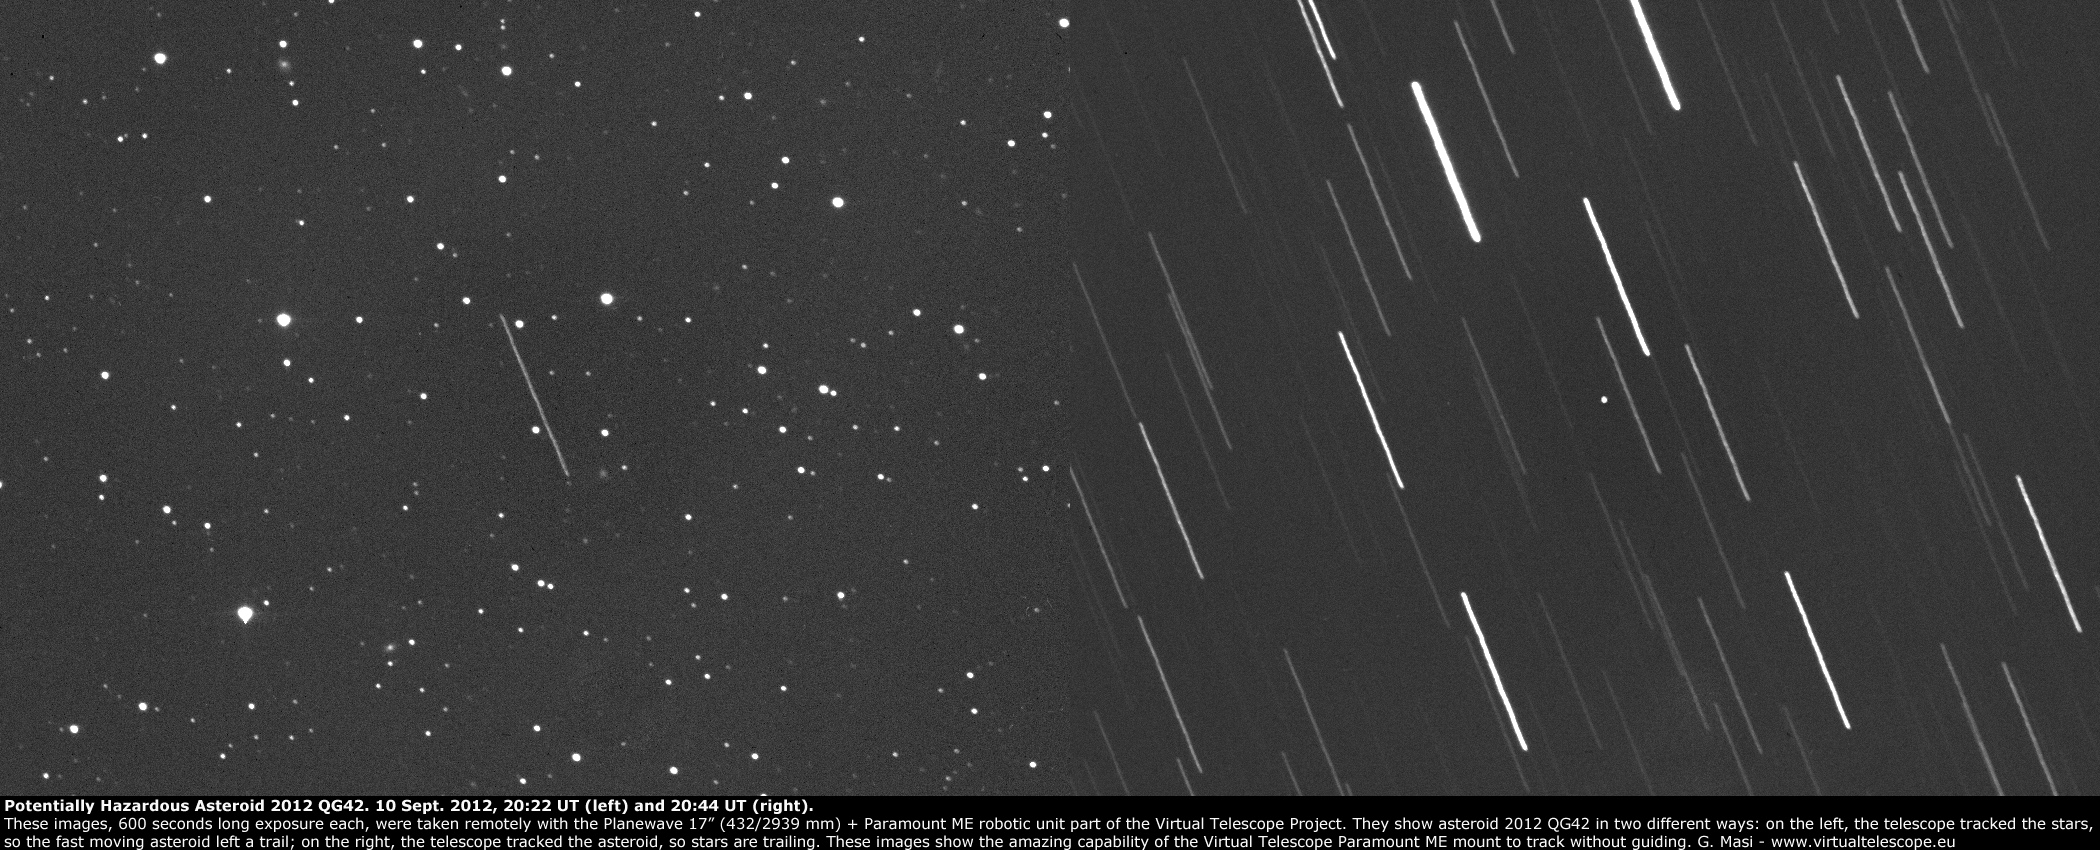 Potentially Hazardous Asteroid 2012 QG42 (10 Sept. 2012)